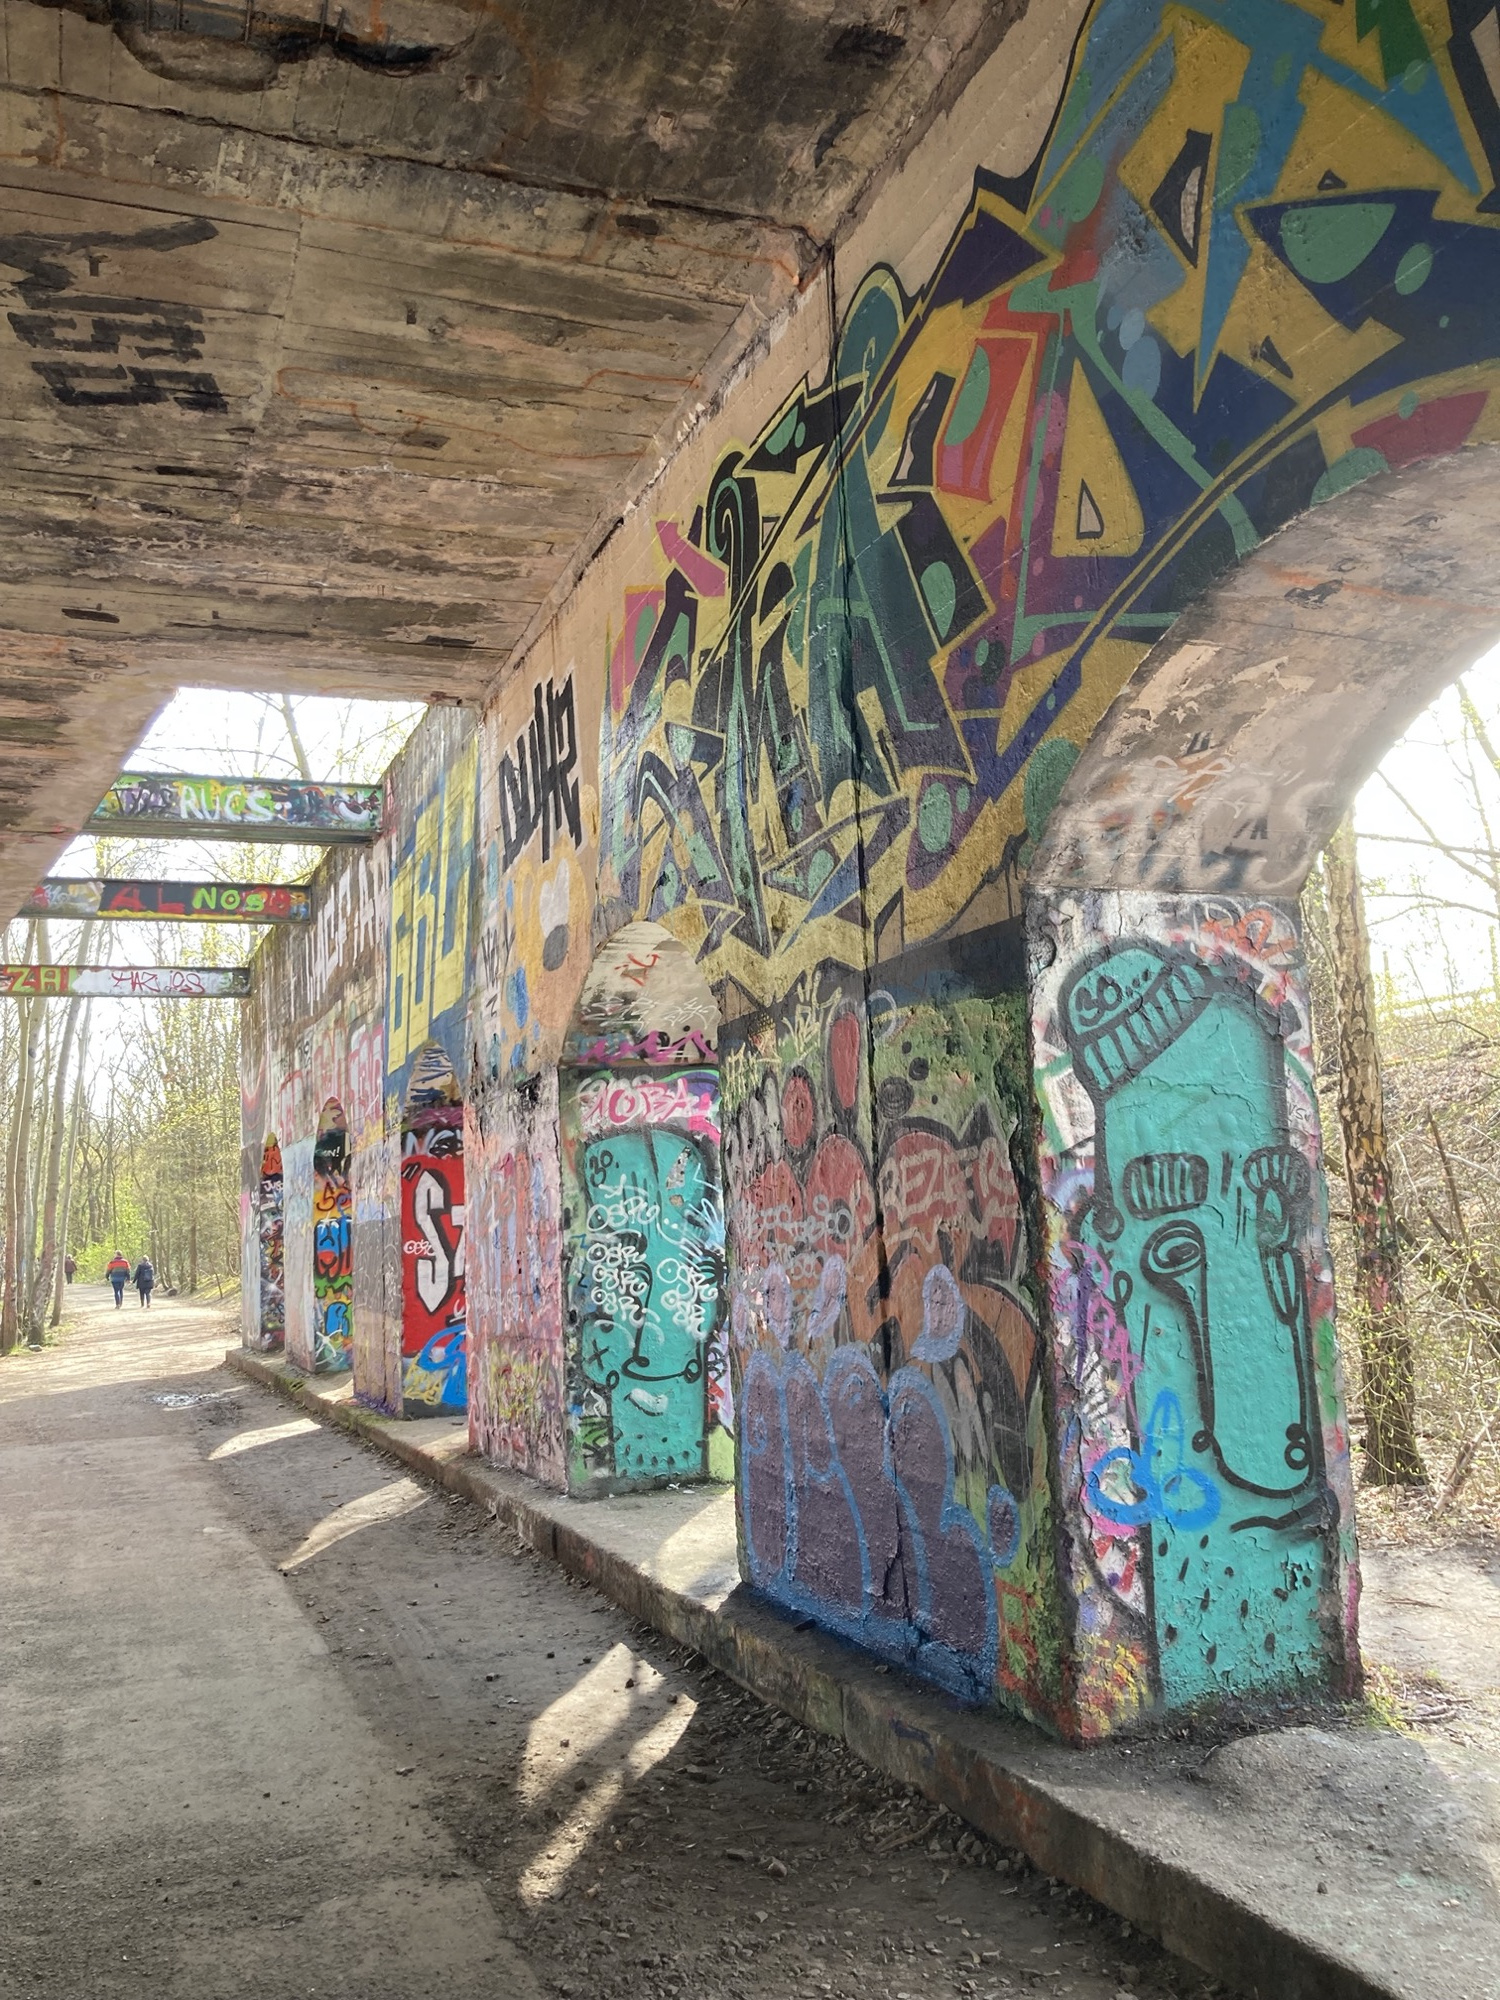 Weg unter einer Eisenbahnbrücke, die Pfeiler der Brücke sind mit Graffiti bemalt, zwischen den Pfeilern der Brücke scheint Sonnenlicht auf den Weg